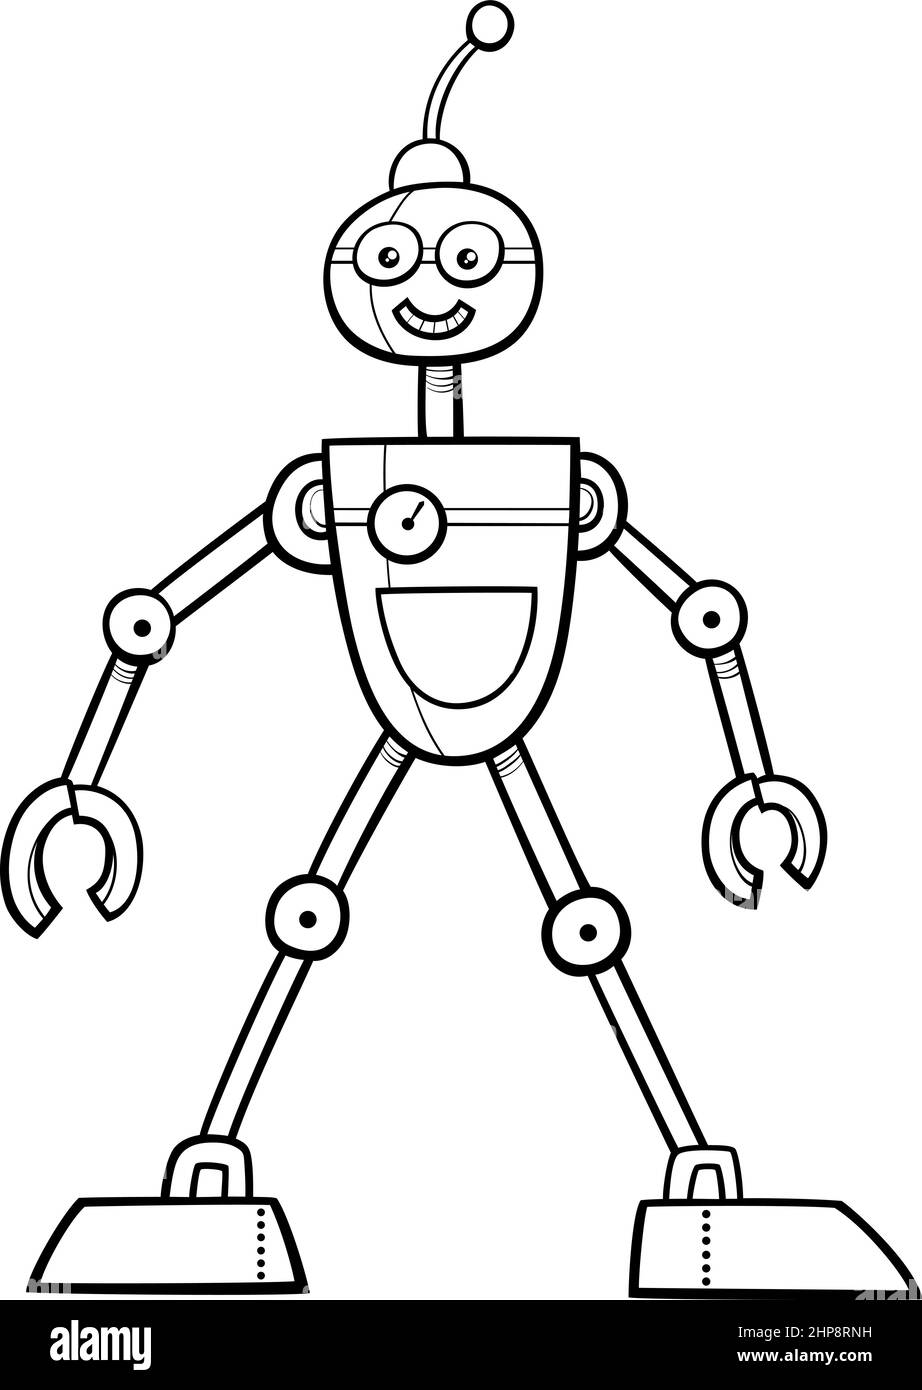 page de livre de coloriage de personnage de fantaisie de robot de dessin animé Illustration de Vecteur